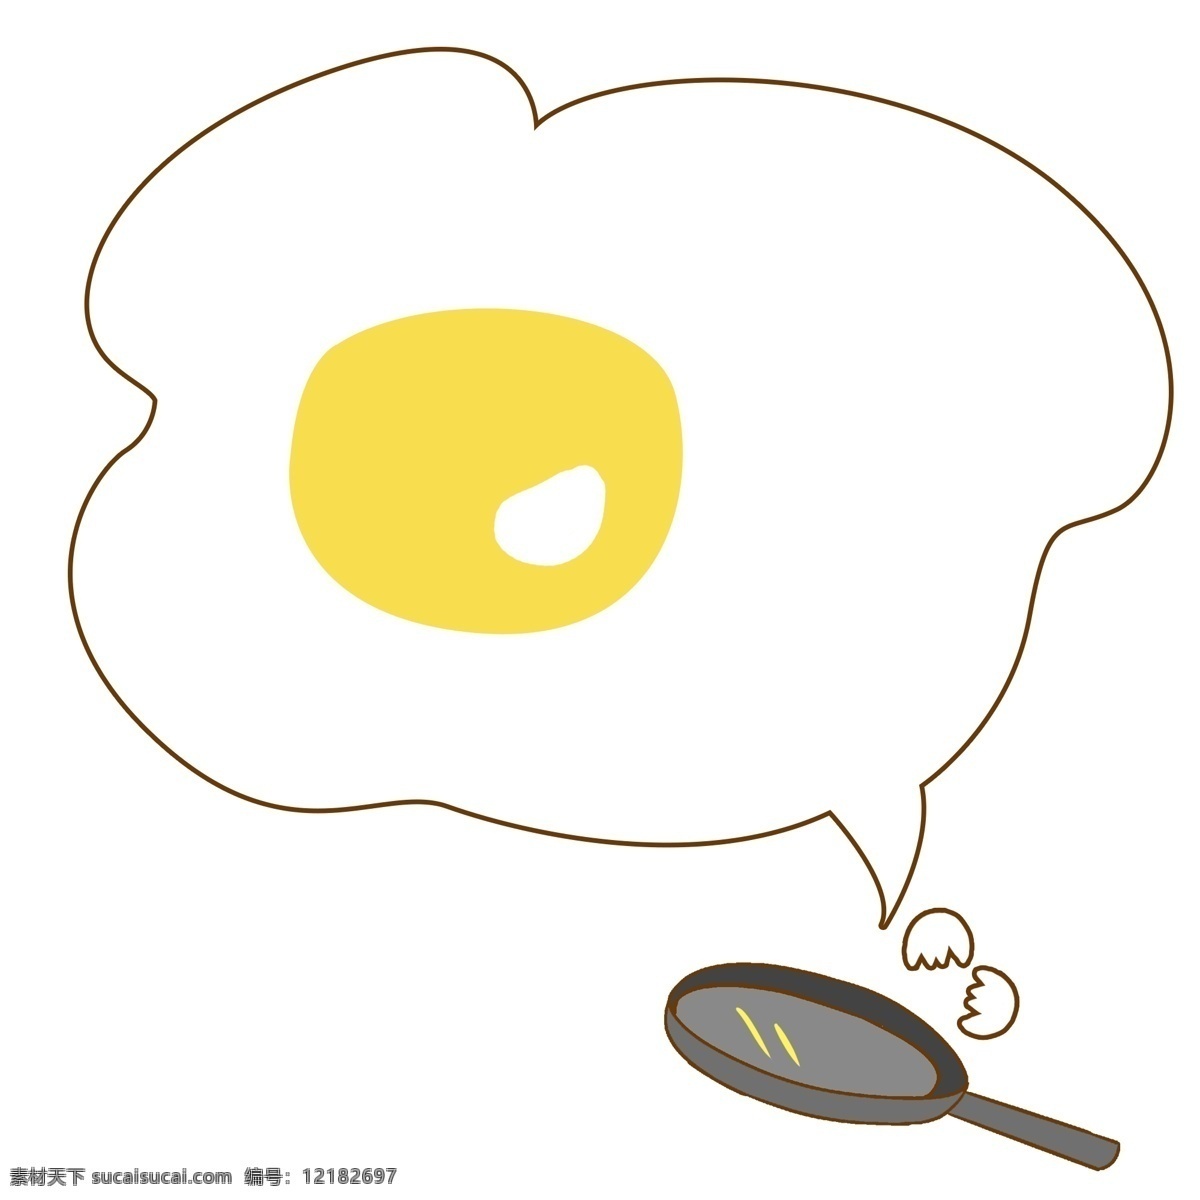 手绘 煎蛋 对话框 插画 煎锅 插图 蛋黄 蛋白 卡通对话框 鸡蛋